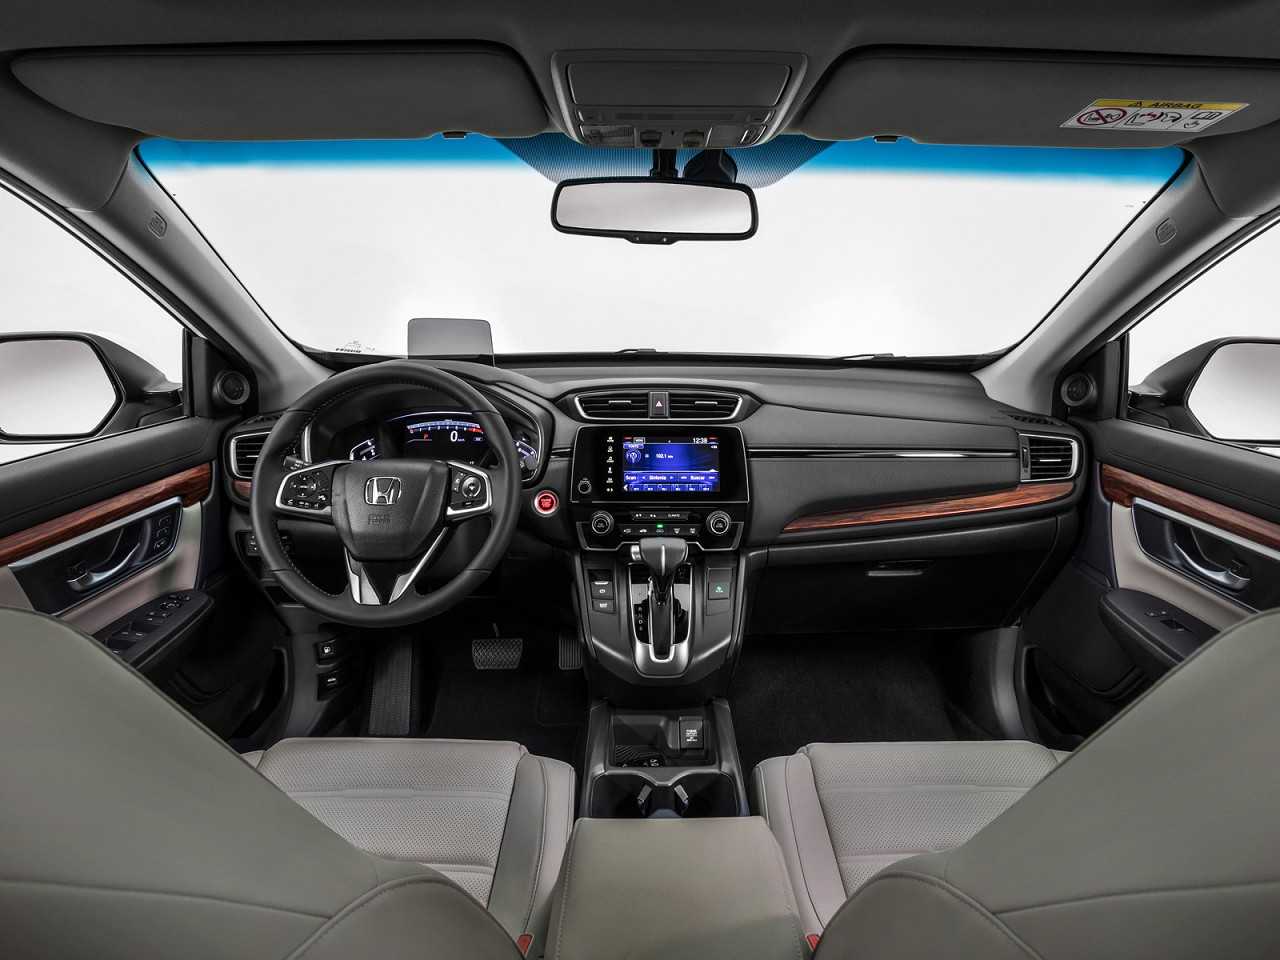 HondaCR-V 2018 - painel